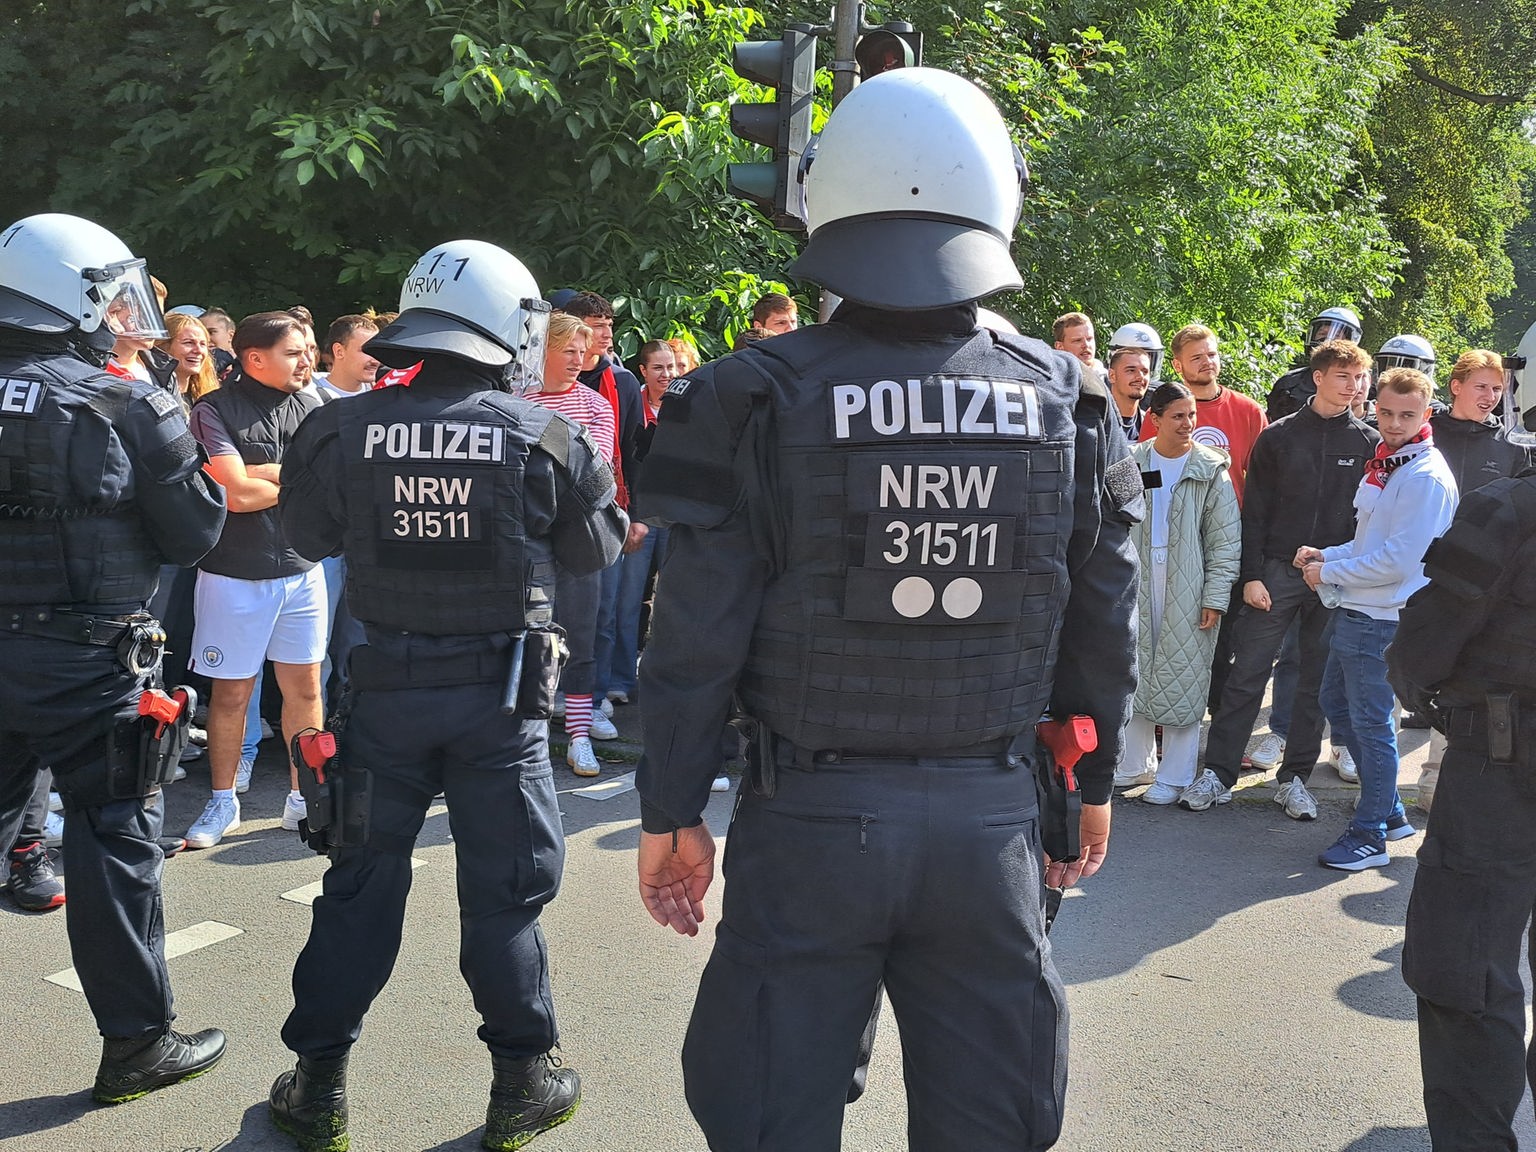 https://www1.wdr.de/nachrichten/rheinland/polizei-training-grosseinsaetze-fussball-em-102~_v-HintergrundL.jpg